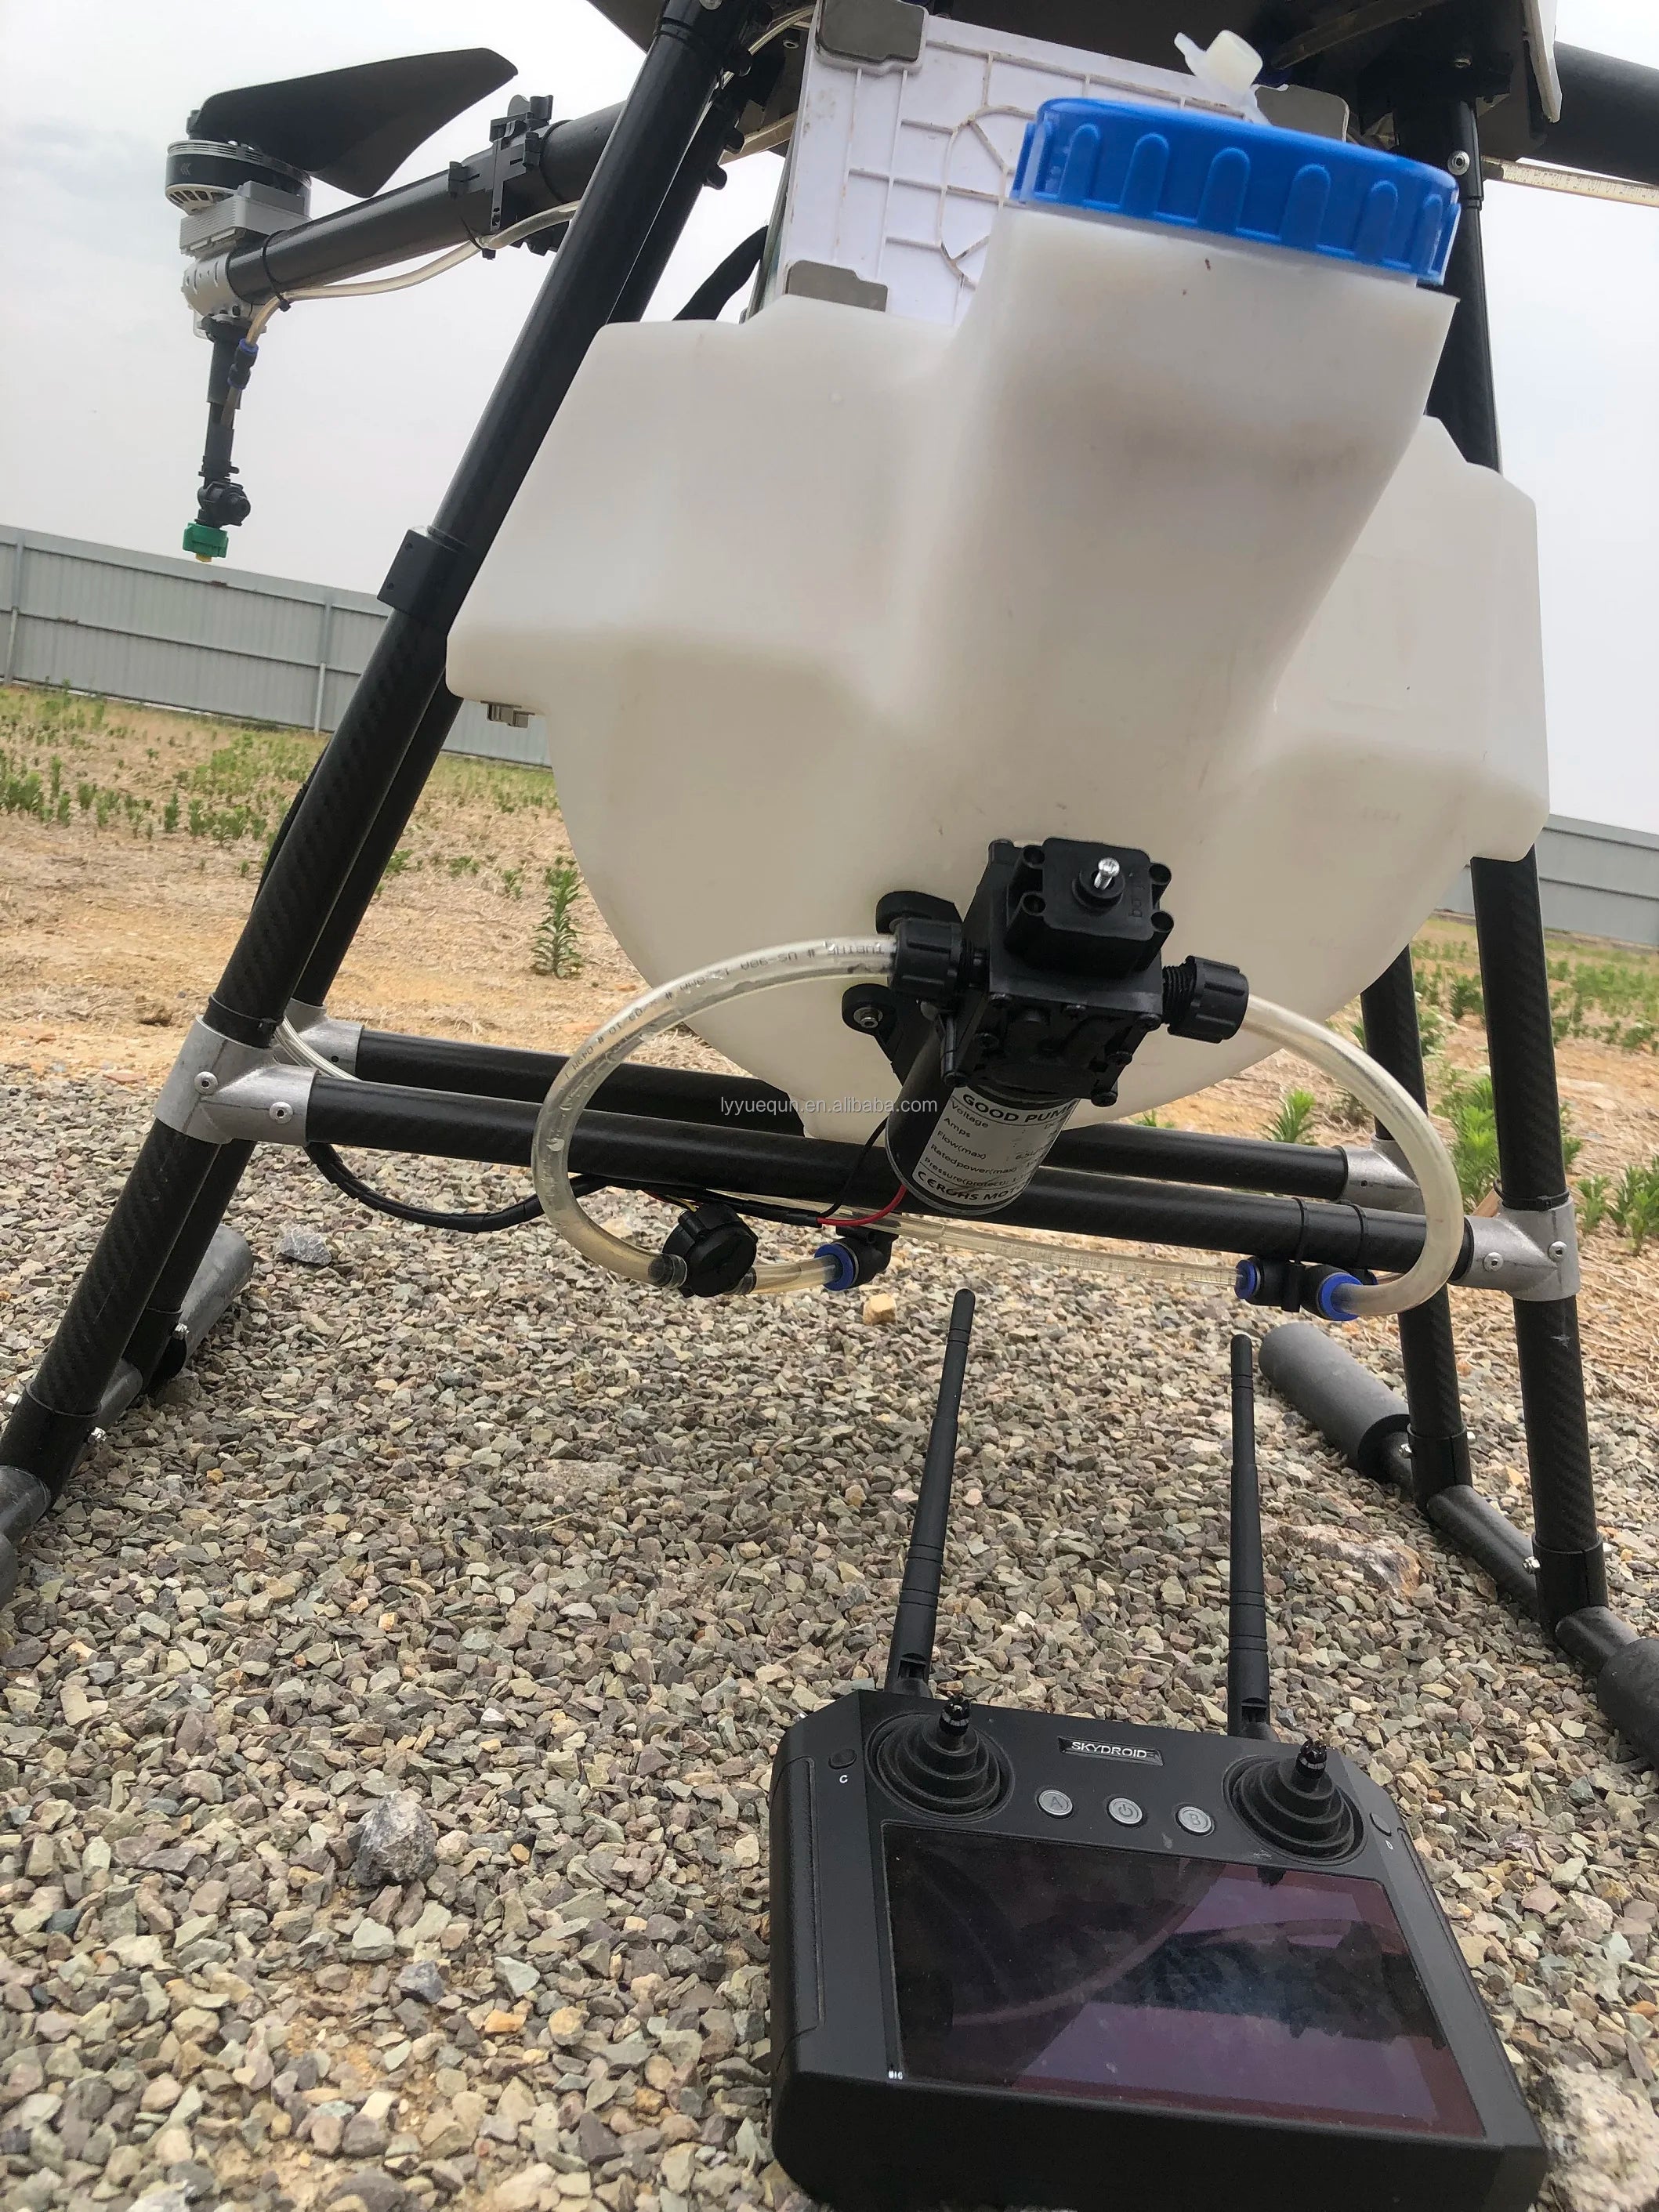 YUEQUN 3WWDZ-30A 30L Agriculture Drone, lyyuequreri,alibaba com GogD Vol